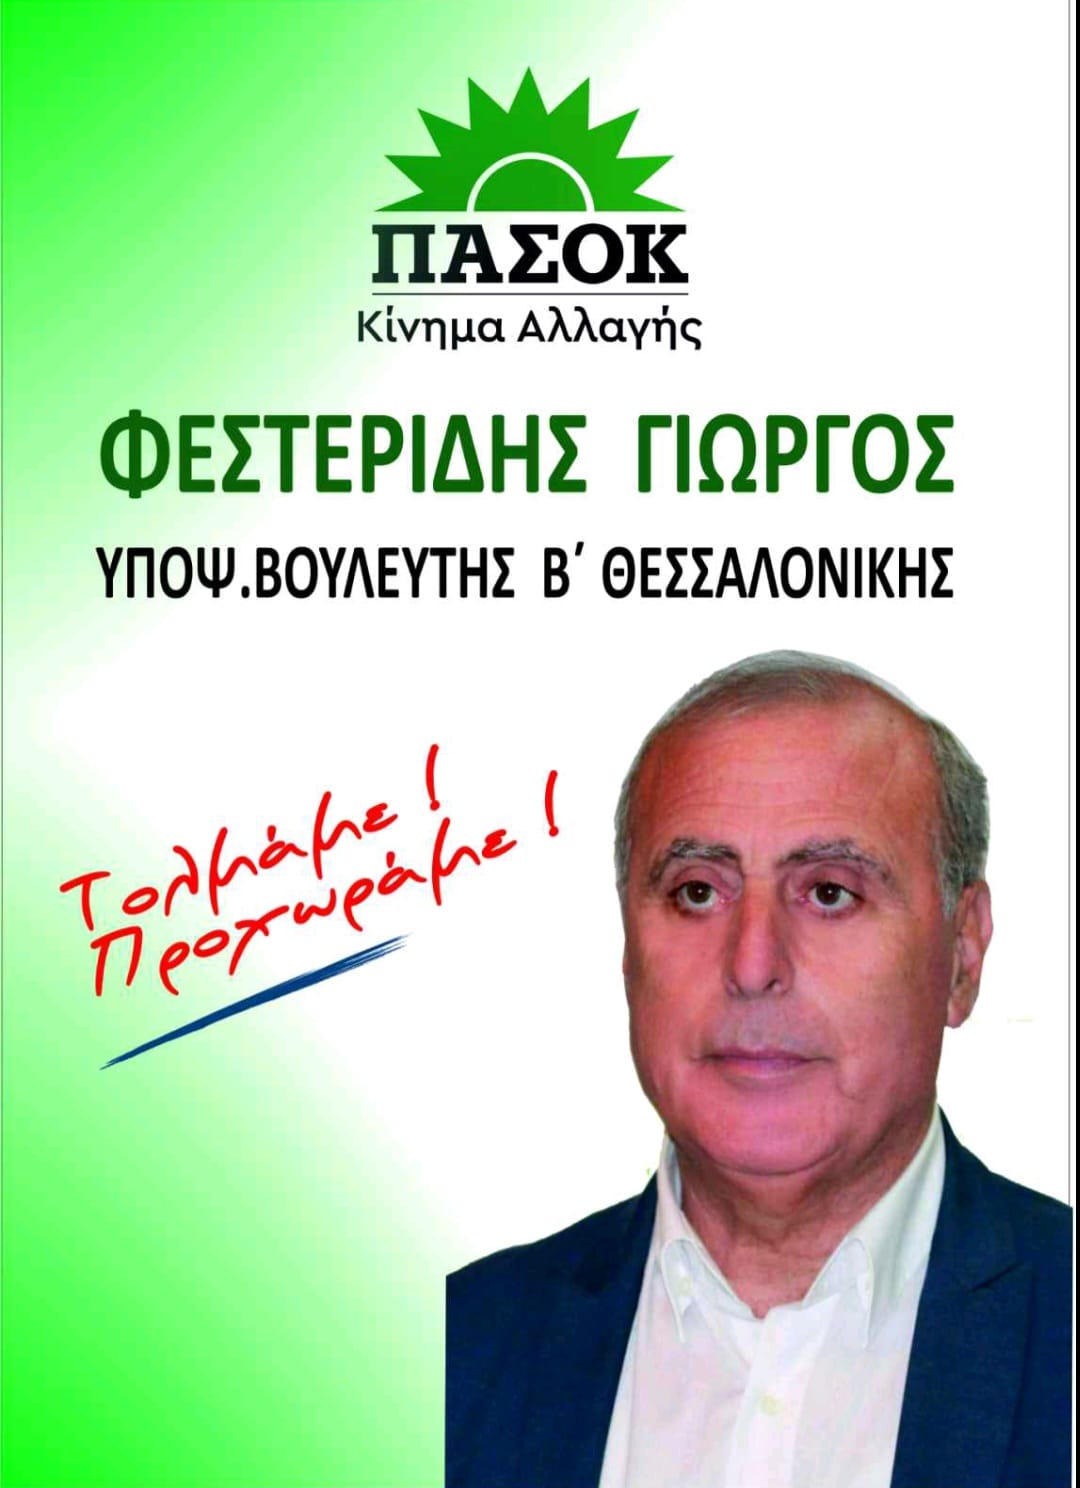 Φεστερίδης: ” 7,5 % μειώθηκε το πραγματικό εισόδημα των Ελλήνων”